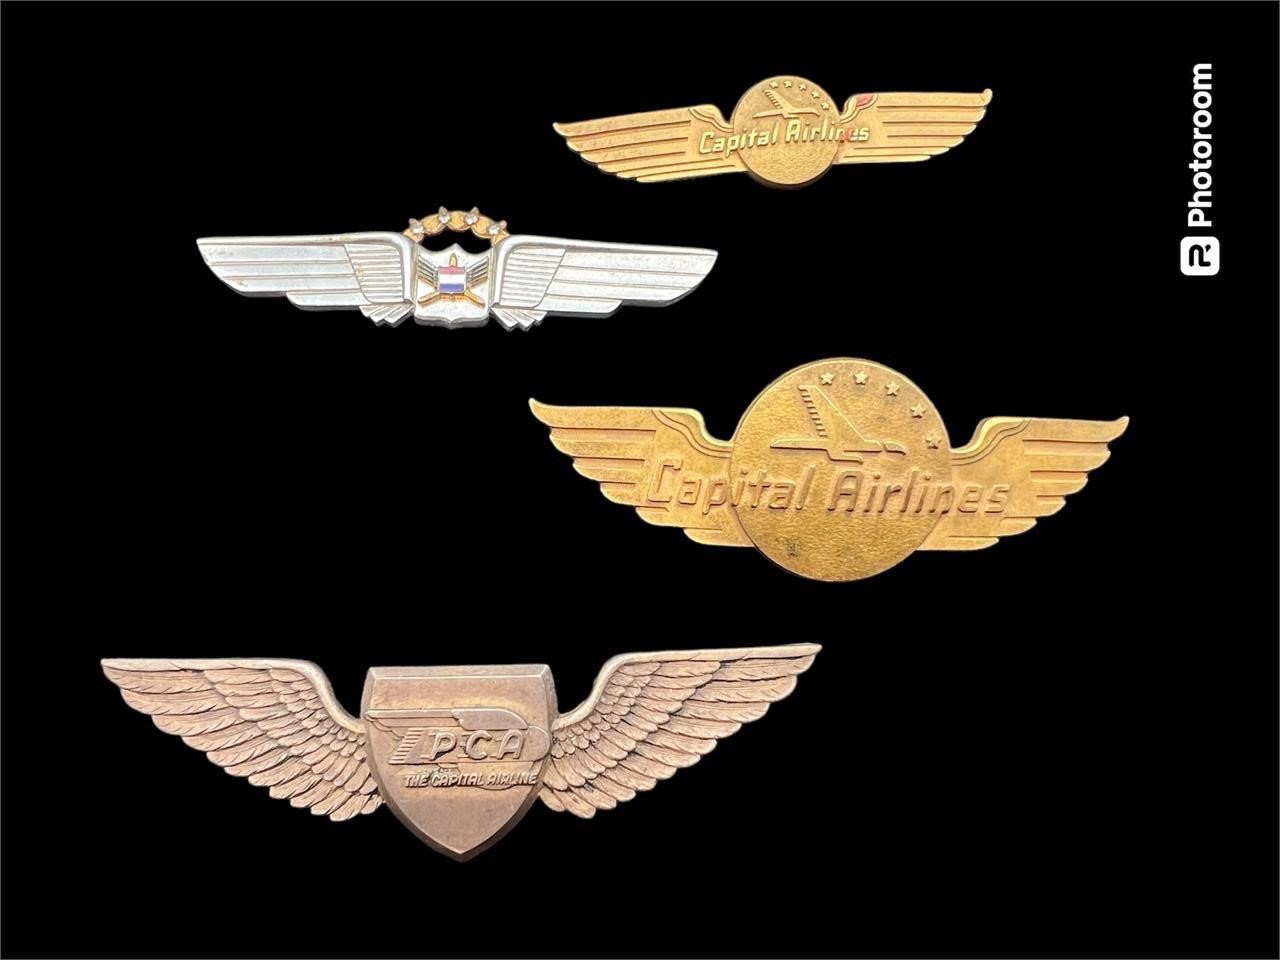 Vintage Pilot pins capital airlines